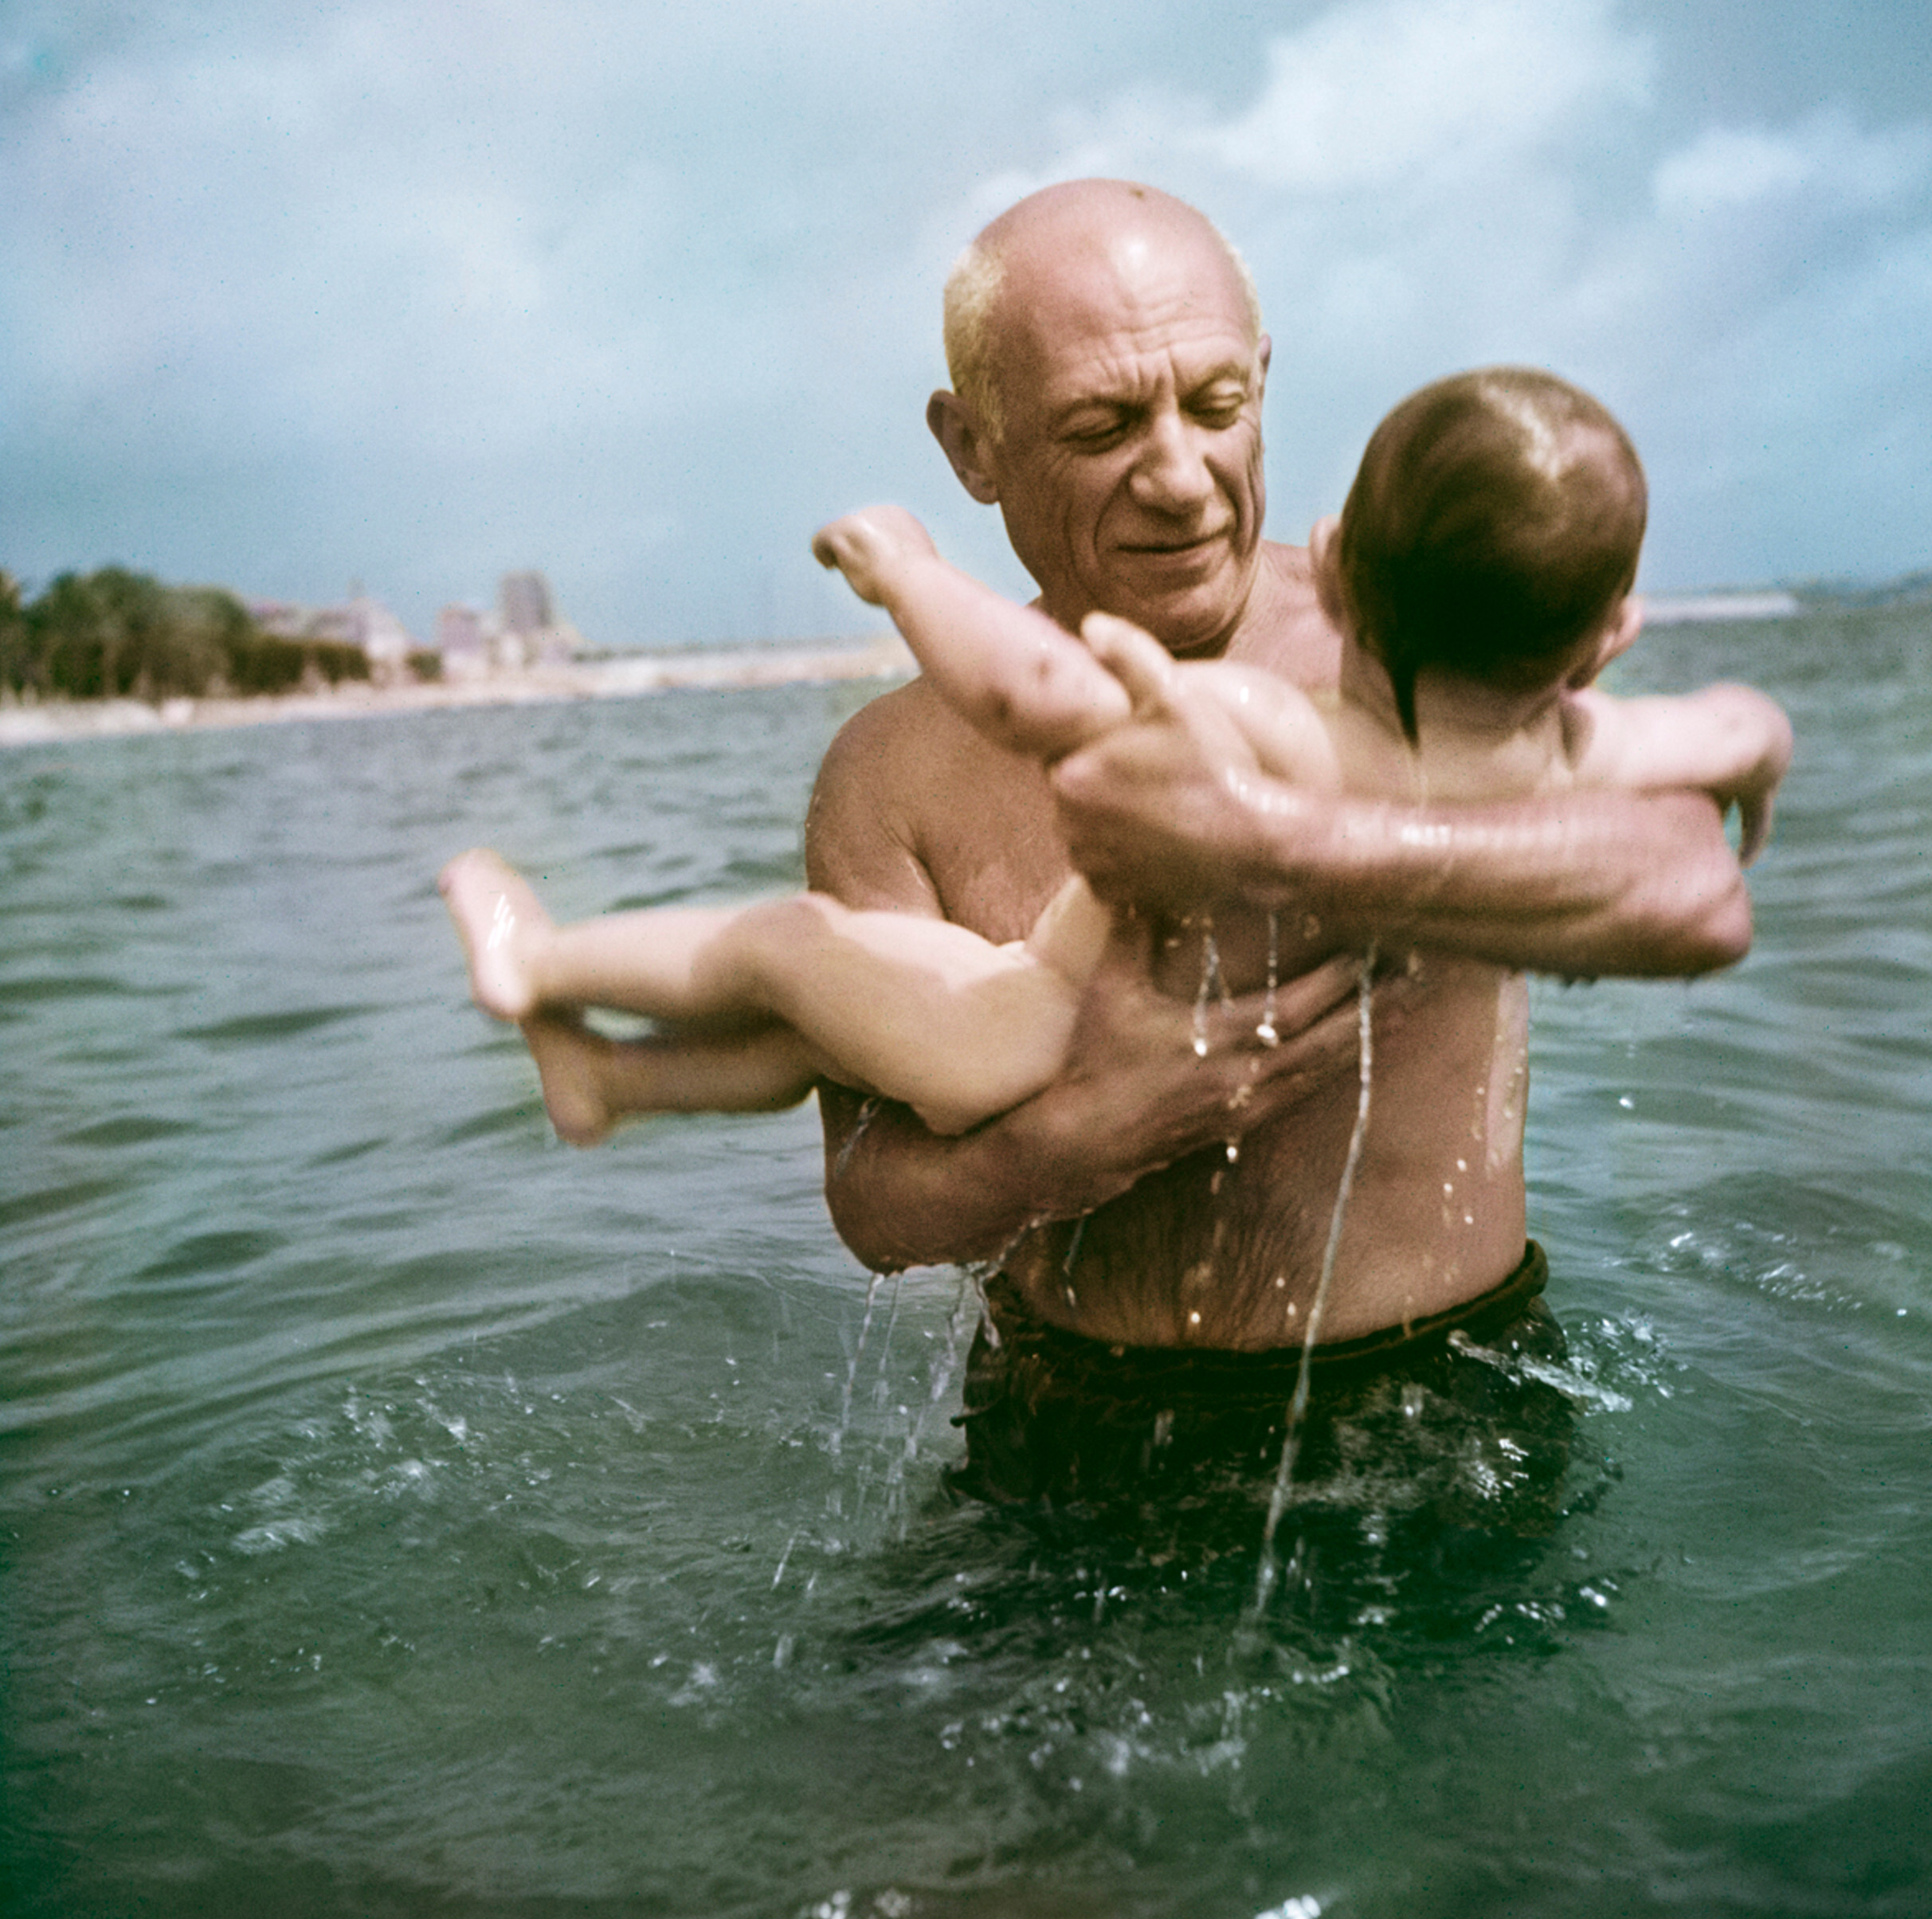 Пабло Пикассо играет в воде со своим сыном Клодом, Валлорис, Франция, 1948 год.  Фотограф Роберт Капа